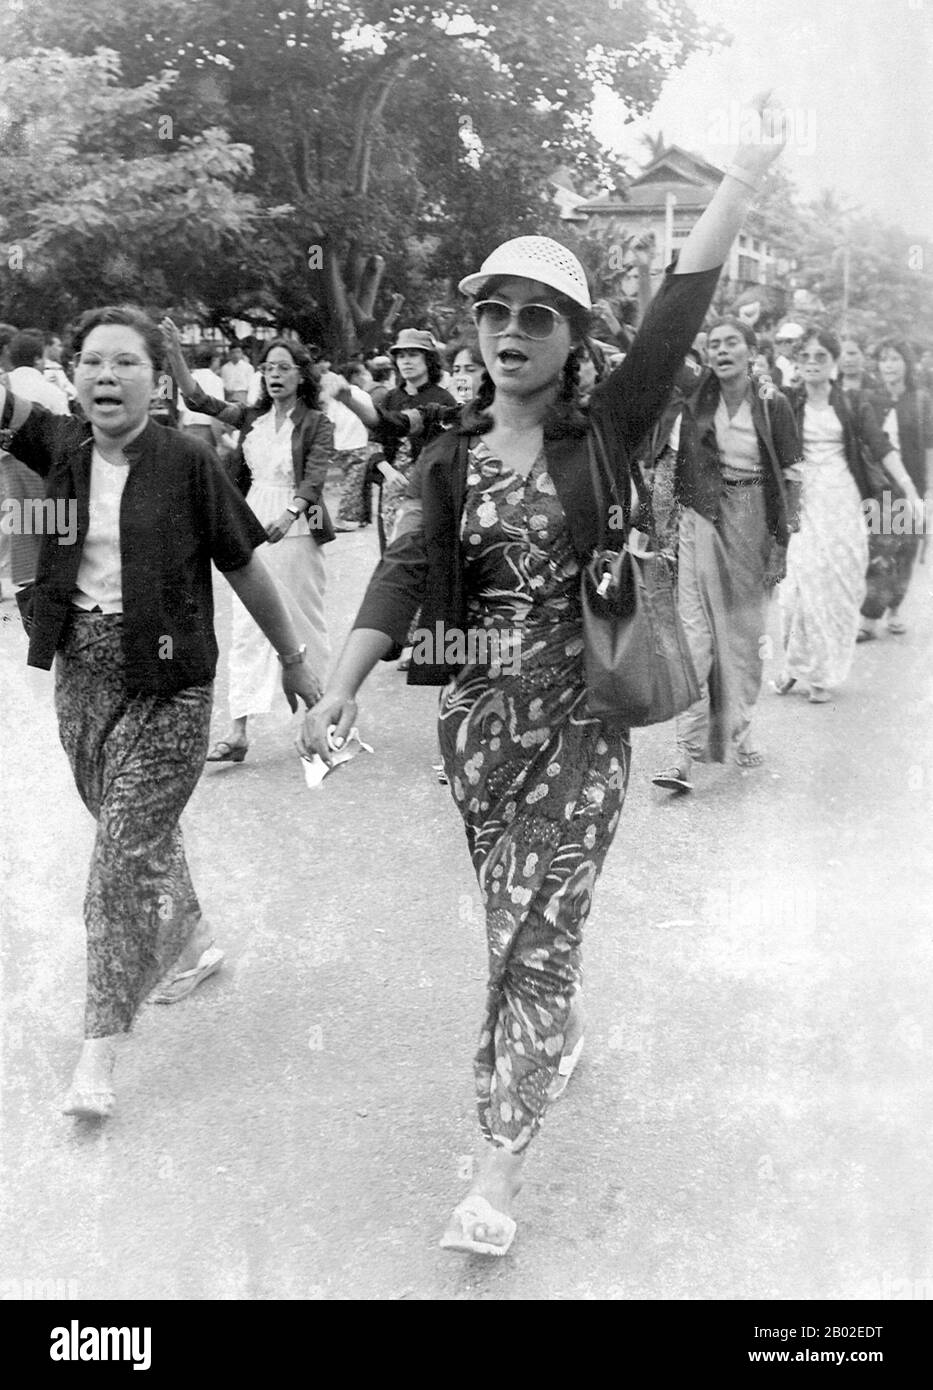 Le Proteste nazionaliste della Pro-Democracy (nota anche come People Power Uprising) del 8888 sono state una serie di marce, dimostrazioni, proteste e rivolte nella Repubblica socialista dell'Unione della Birmania (oggi comunemente conosciuta come Birmania o Myanmar). Gli eventi chiave si sono verificati l'8 agosto 1988, ed è quindi noto come 8888 Uprising. Foto Stock